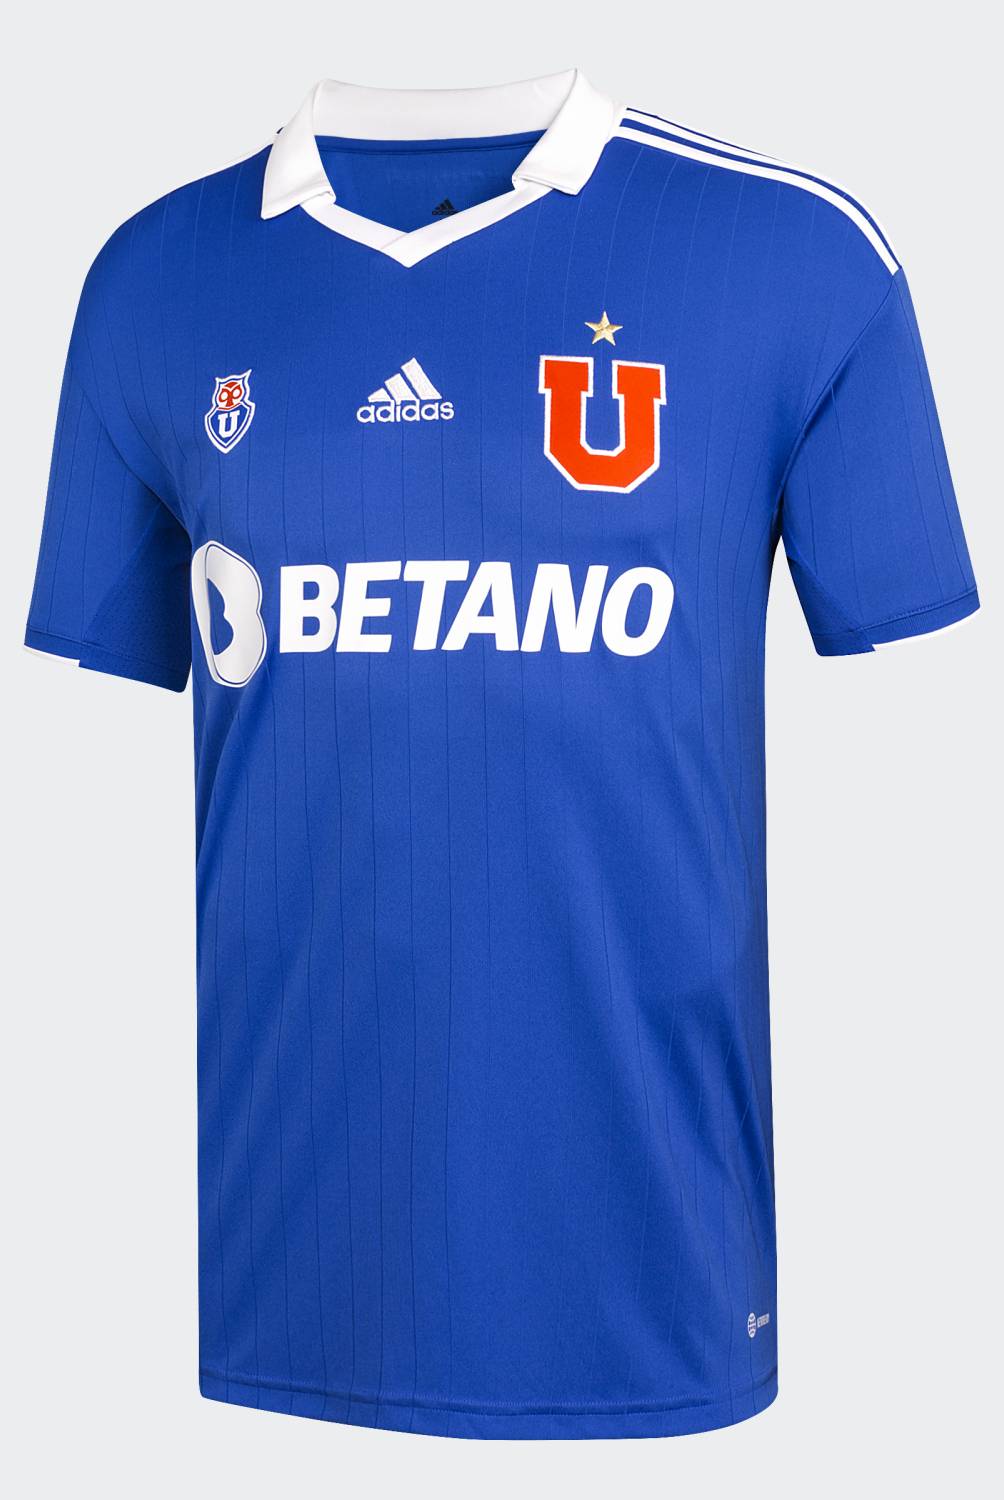 ADIDAS - Adidas Camiseta de Fútbol Universidad de Chile Local Hombre